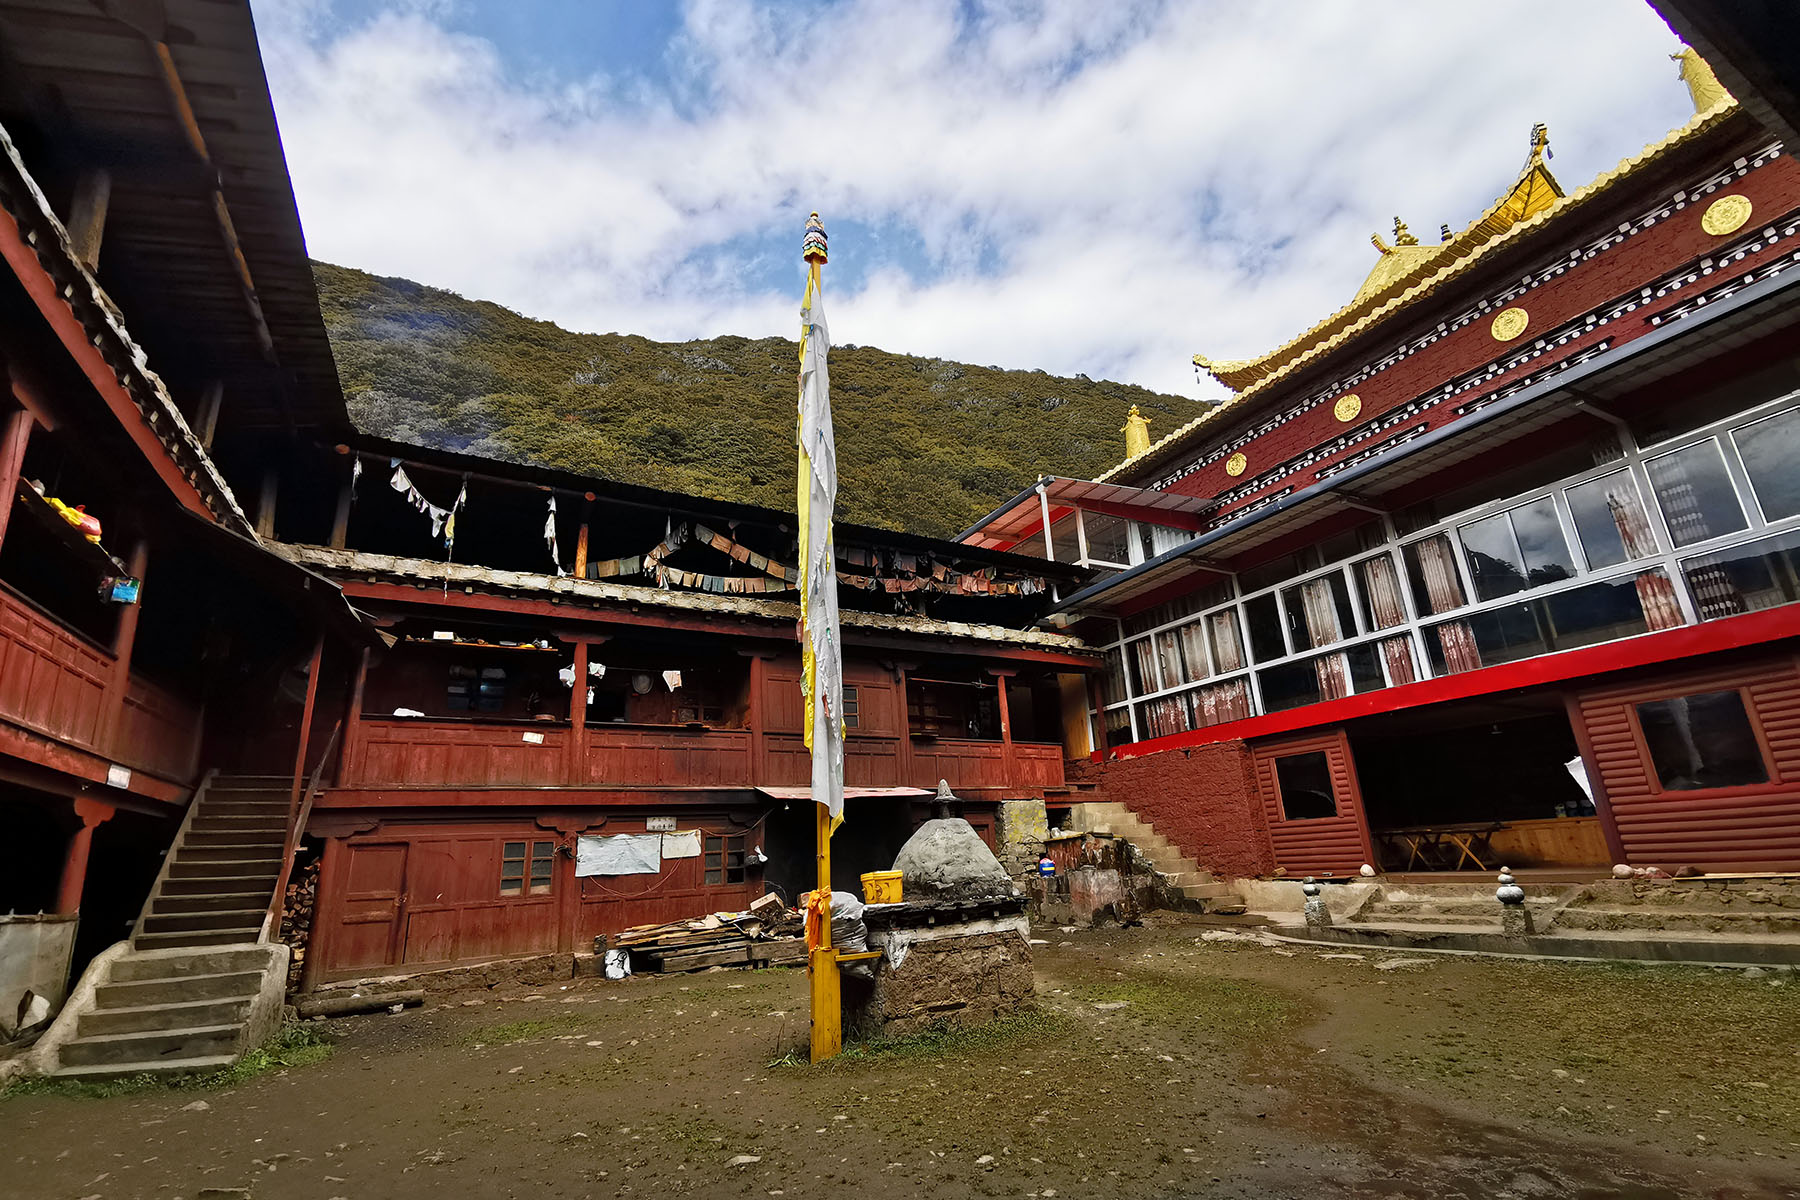 Gongga Monastery